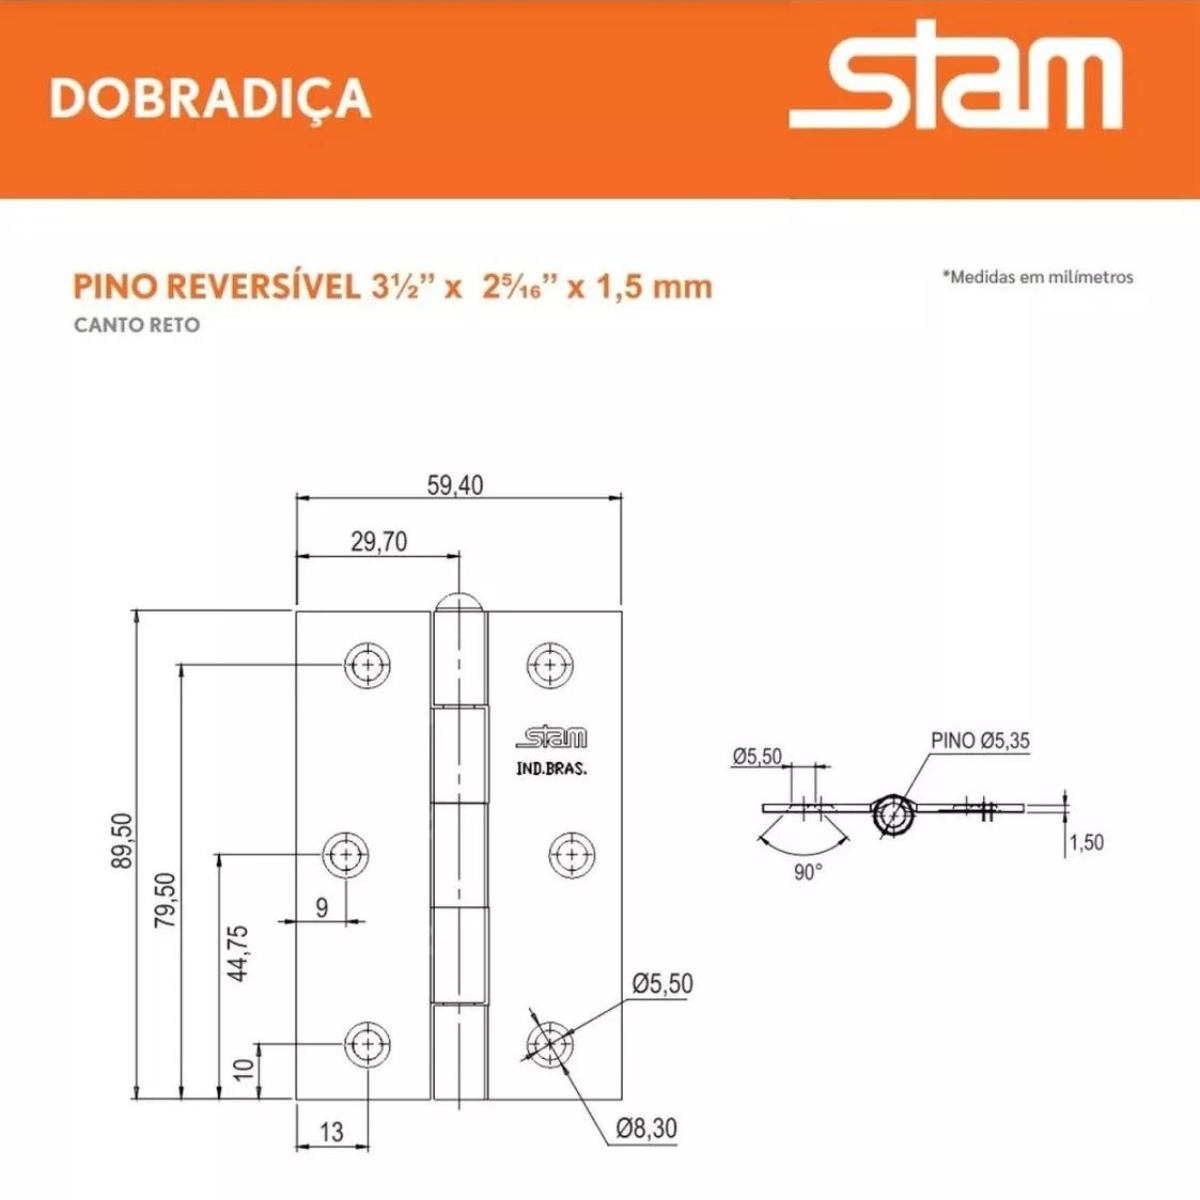 Dobradiça Pino Reversível 3½x2 5/16 X1,5mm Galvanizado Stam - 2